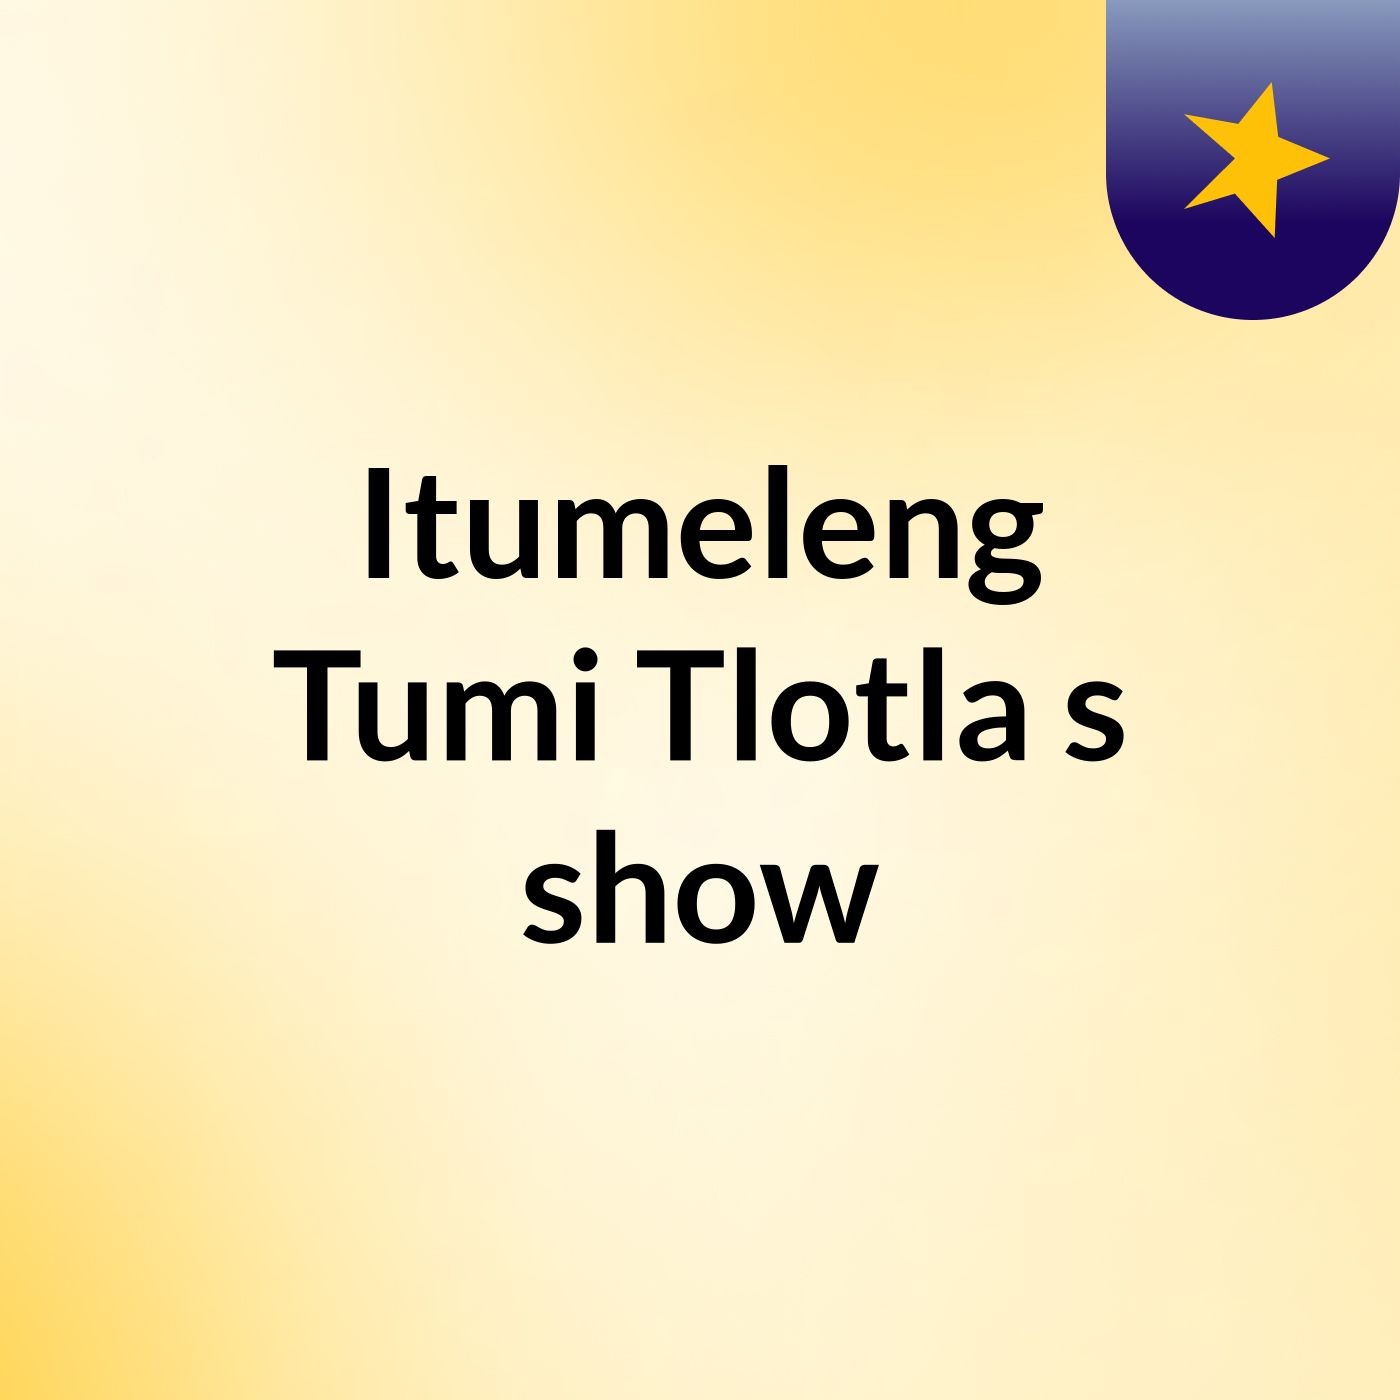 Tumi Late show